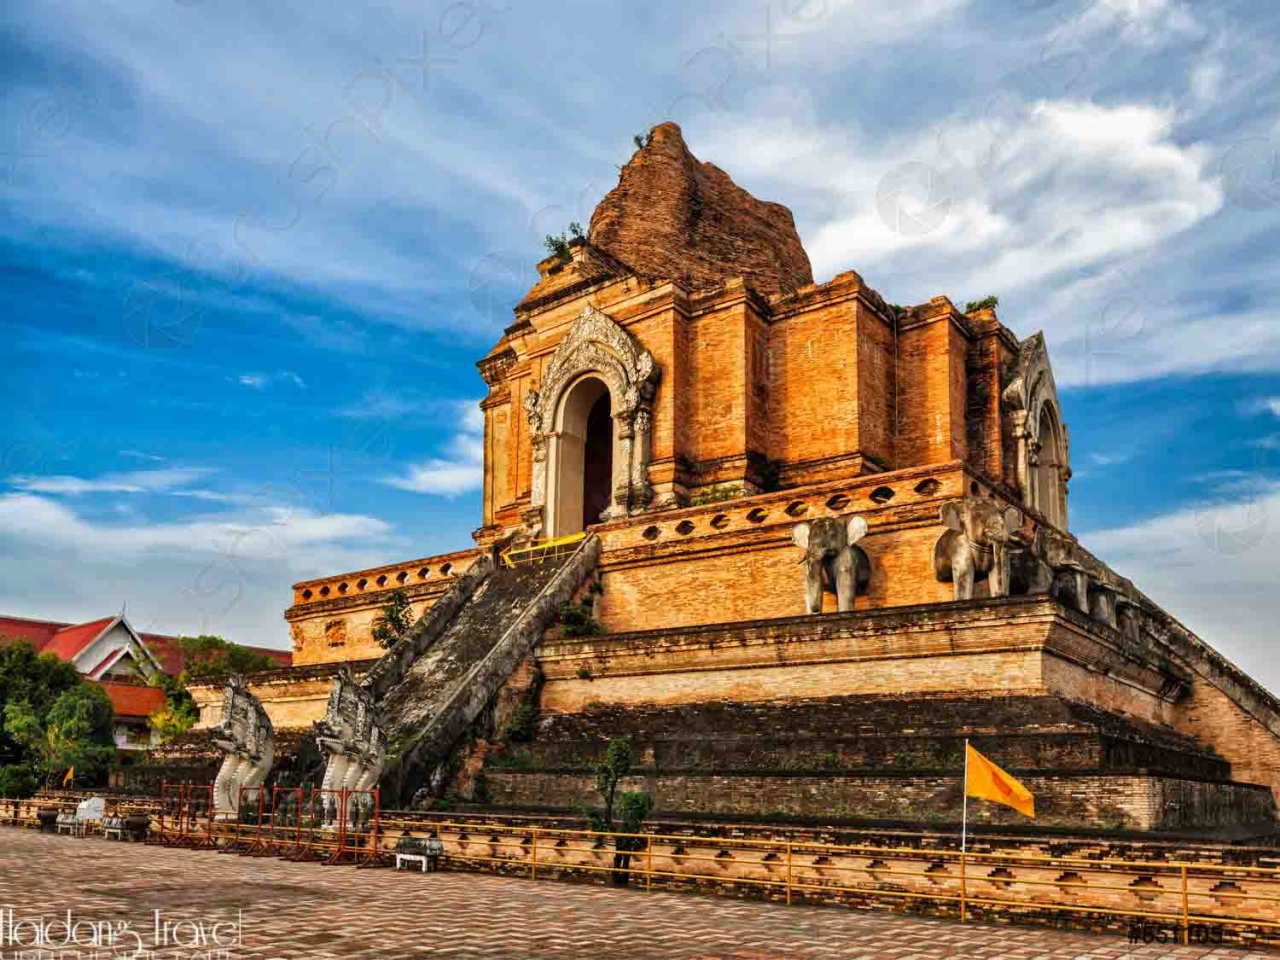 Viếng thăm chùa Chedi Luang trong tour du lịch Thái Lan